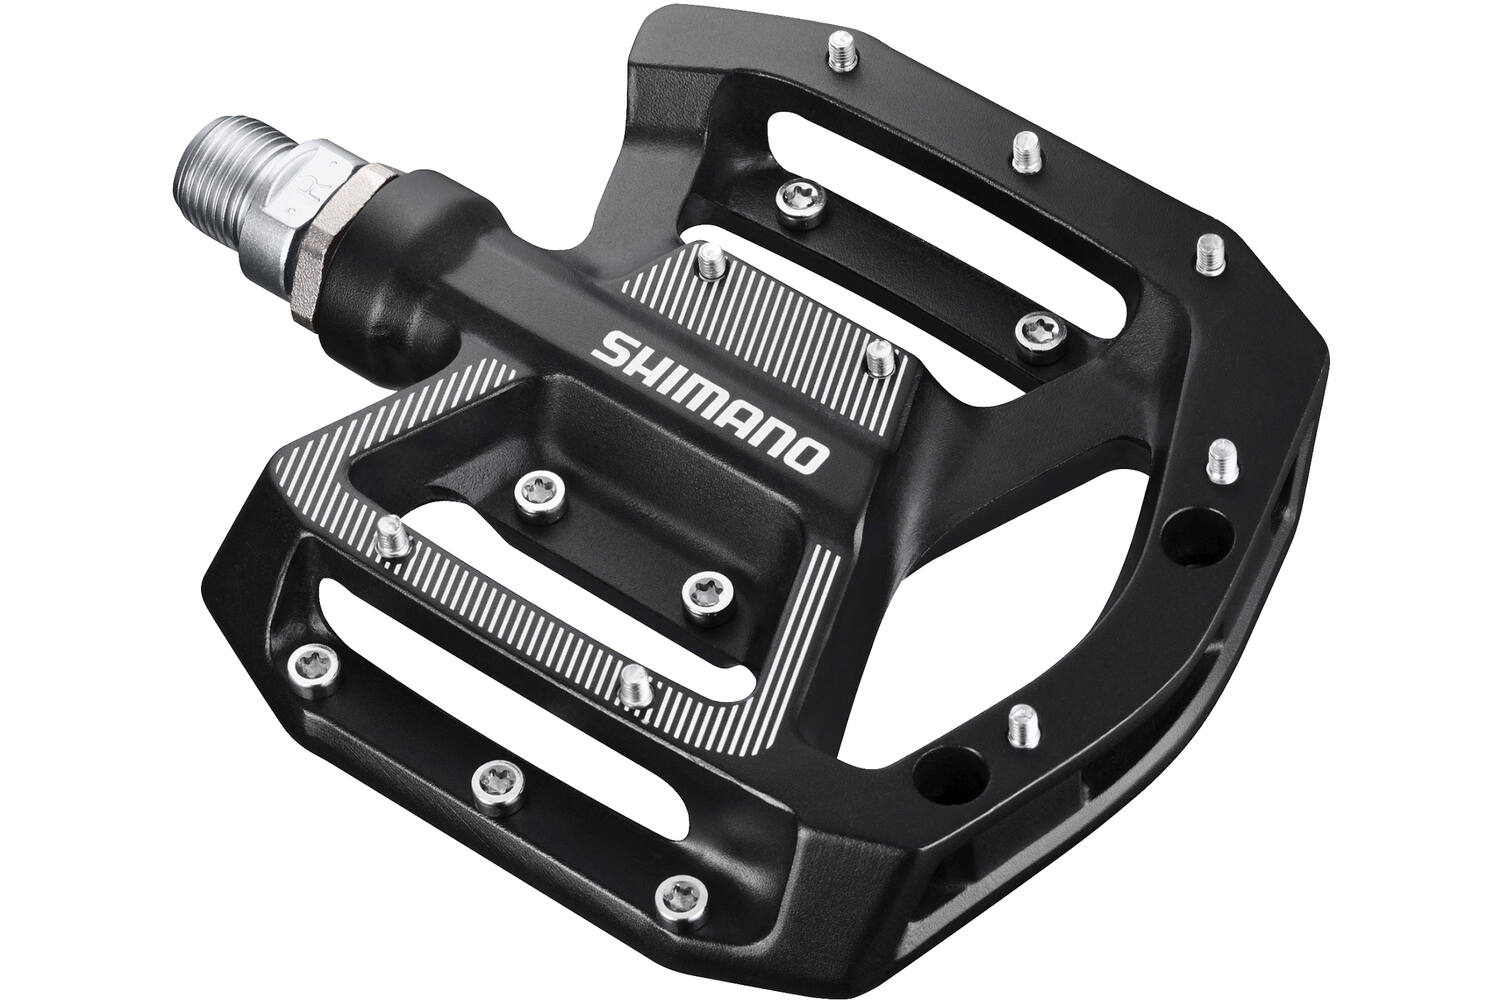 Shimano - pd-gr500 mtb pedalen flat zwart